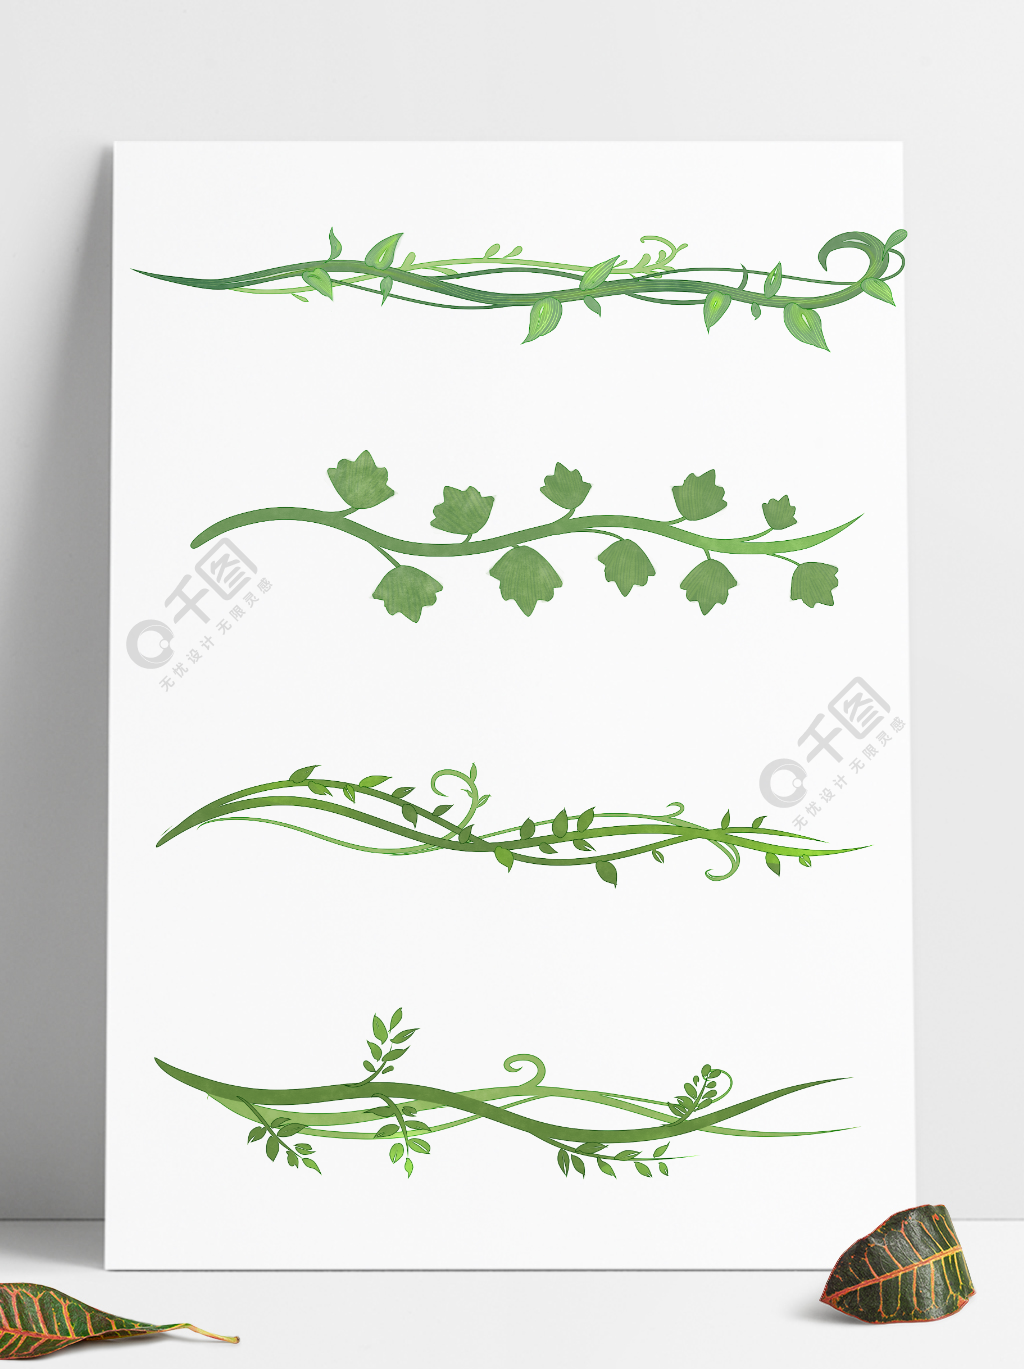 手绘植物藤蔓装饰分割线边框